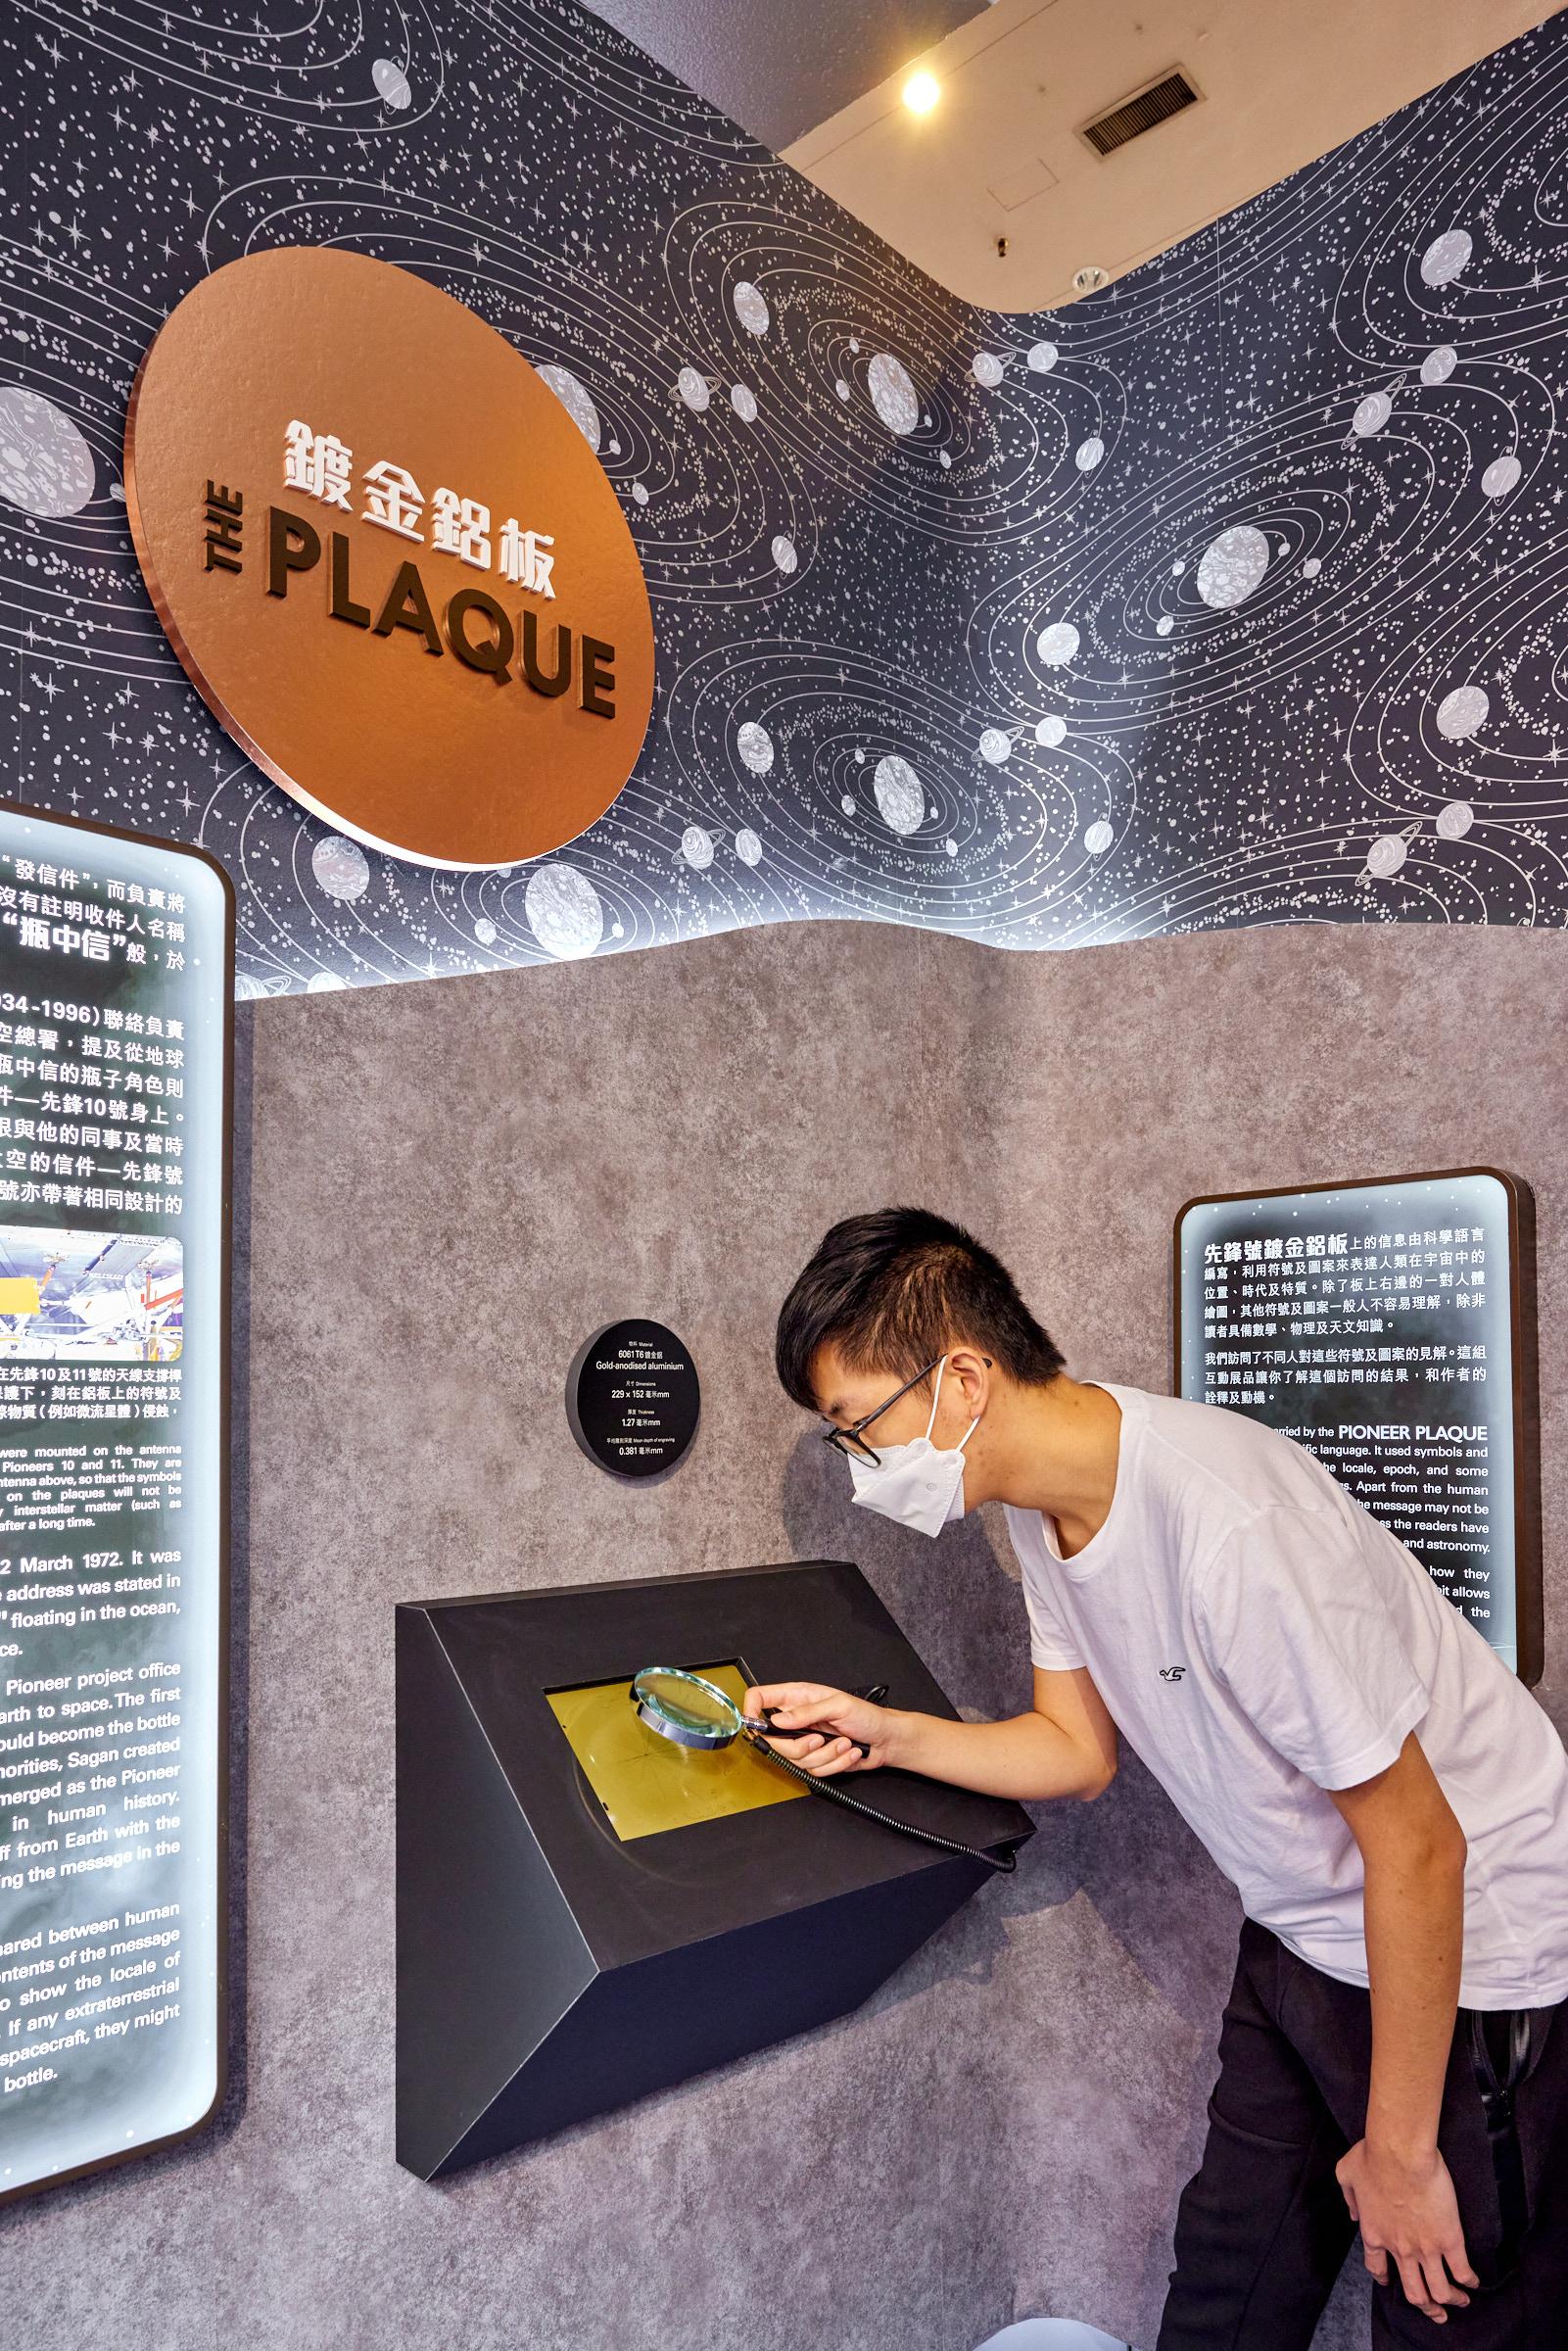 香港太空馆明日（十月二十六日）推出全新专题展览「先锋号星际之旅」。图示在上世纪七十年代升空的两艘太空船——先锋10号和11号所携带的镀金铝片的复制品。金属片上除了展示一男一女的图案，更包含了太阳系在宇宙中的位置等资讯。